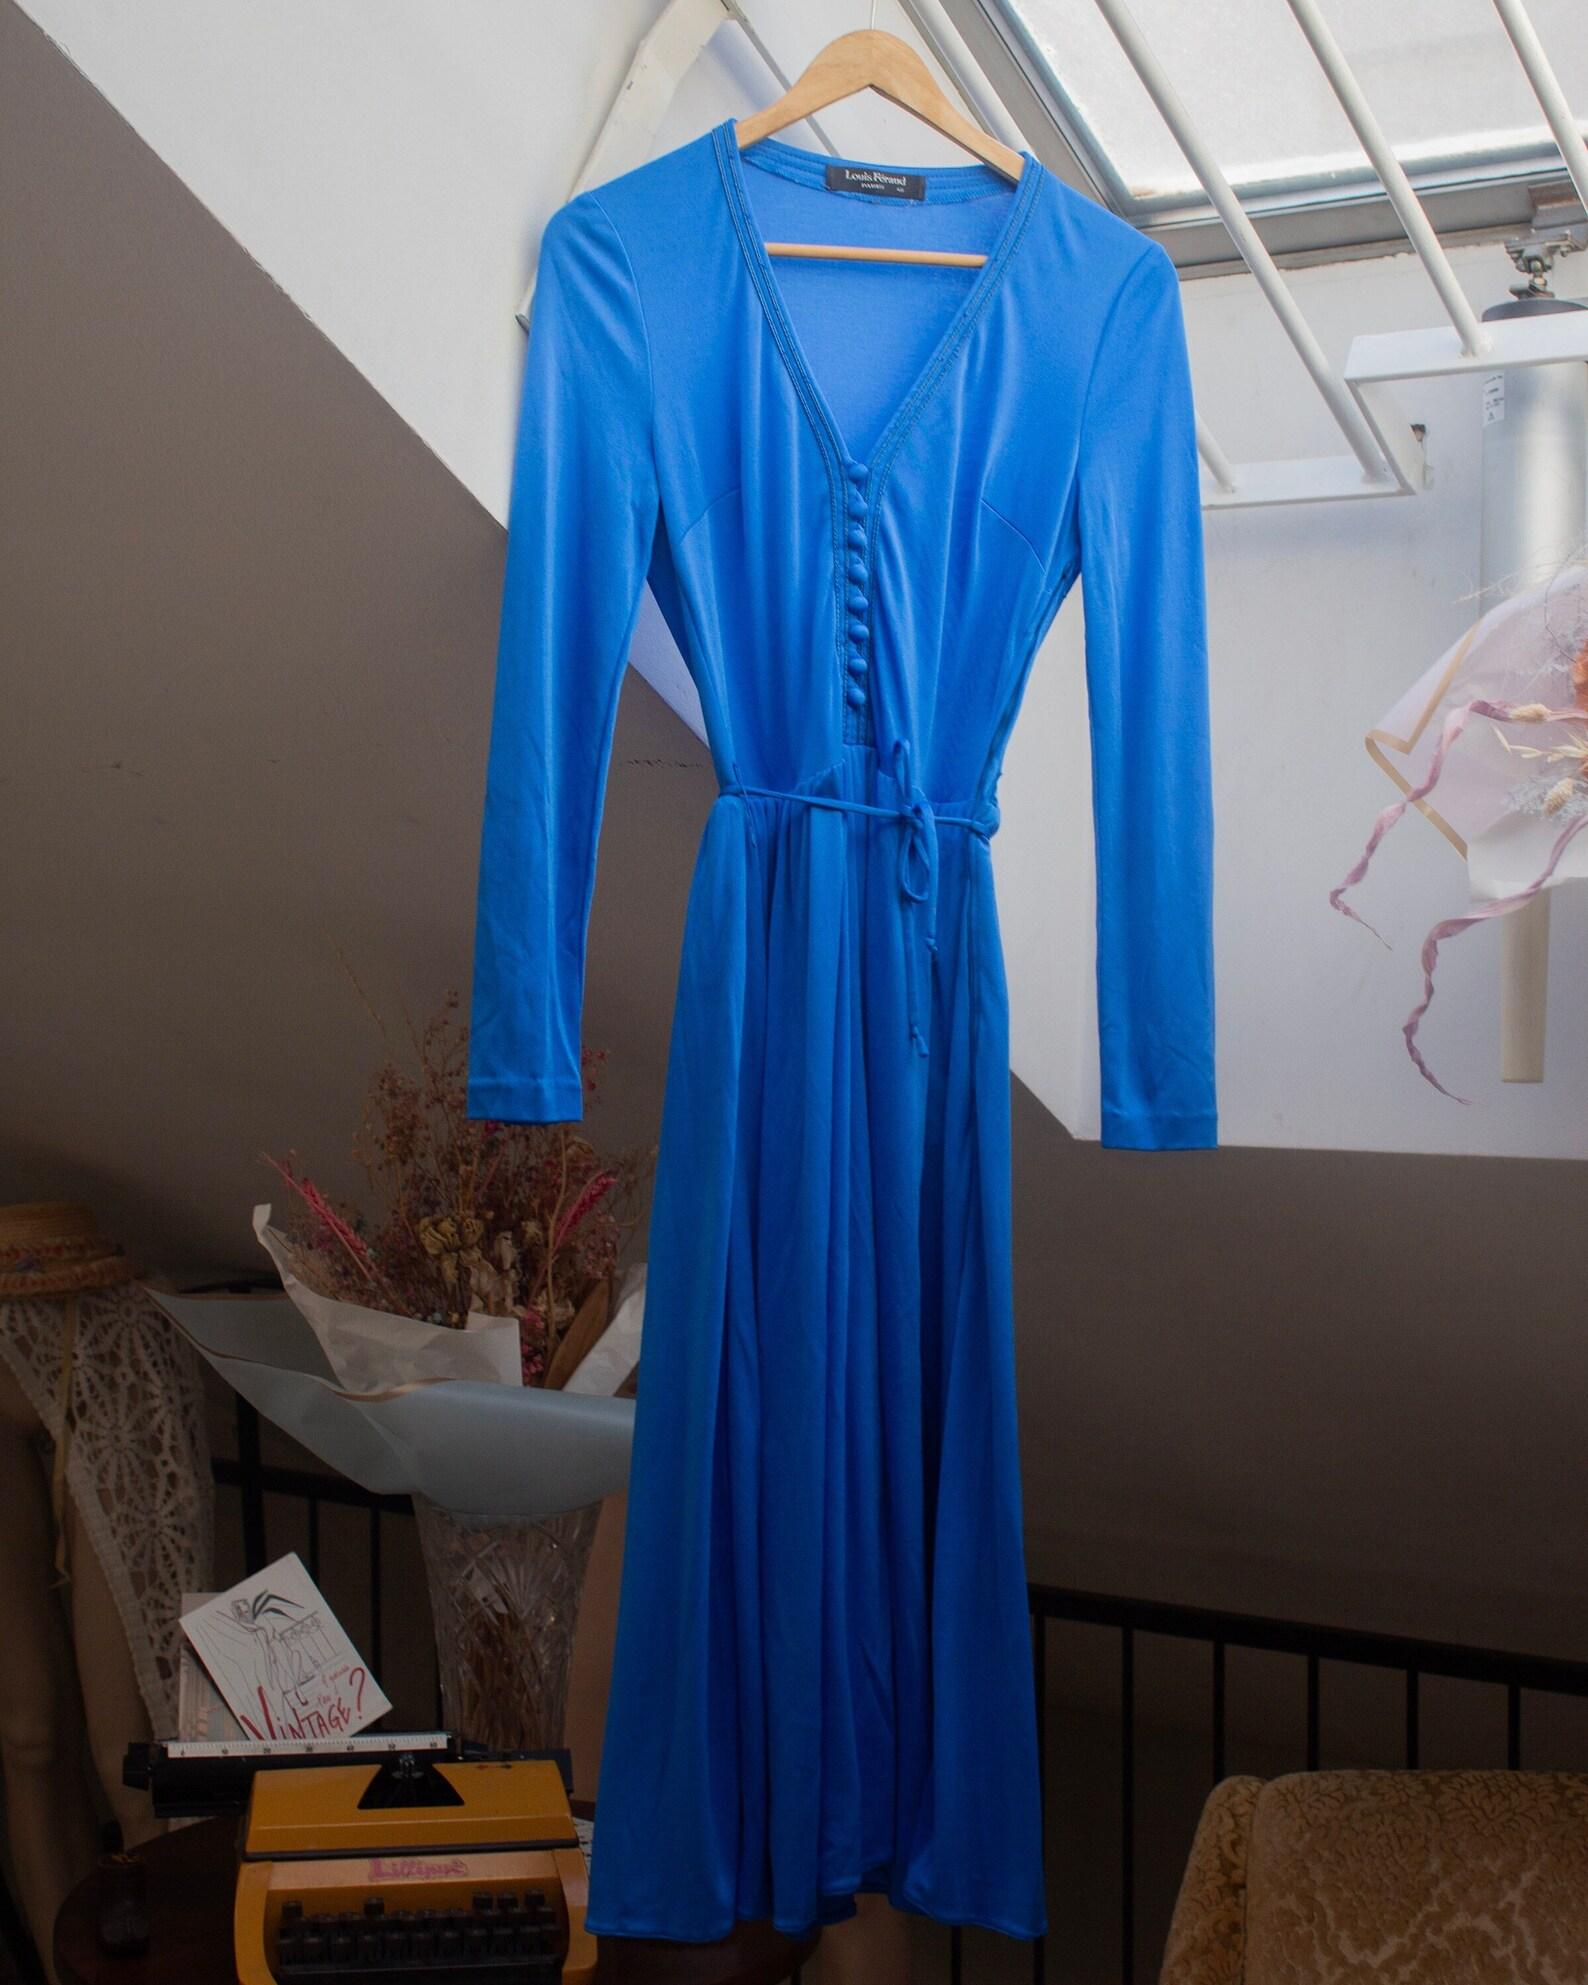 Louis Féraud Paris 1970's Klein blaues Jersey Kleid mit tiefem V-Ausschnitt und Knopfleiste, langen Ärmeln, Gürtel und Seitentaschen (S)
Seitlicher Reißverschluss, Gürtel und Knopfverschluss
Rock ist gefüttert 
Seitentaschen
Größe S, überprüfen Sie